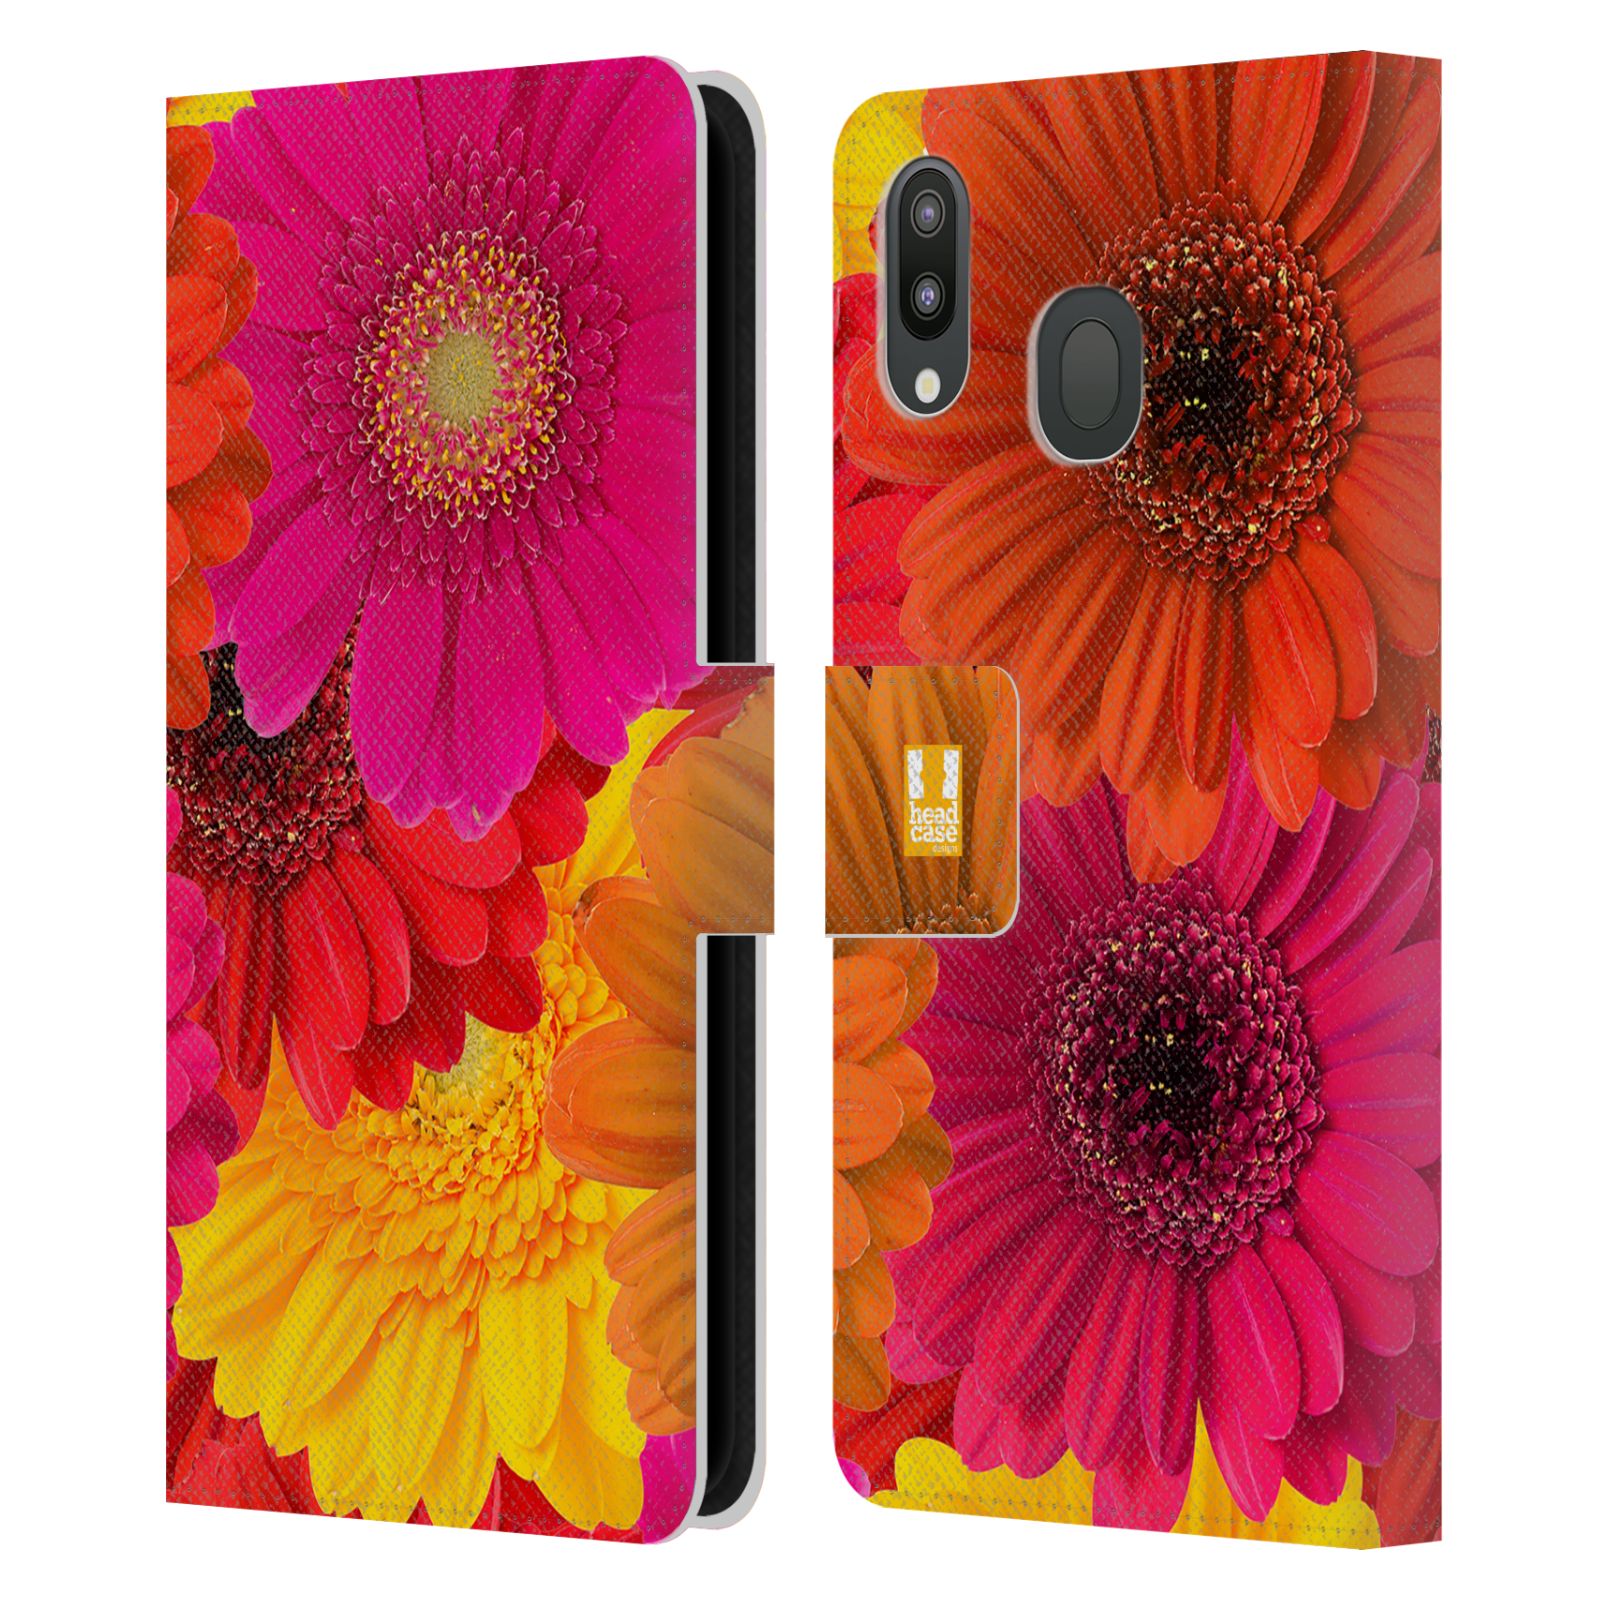 Pouzdro na mobil Samsung Galaxy M20 květy foto fialová, oranžová GERBERA